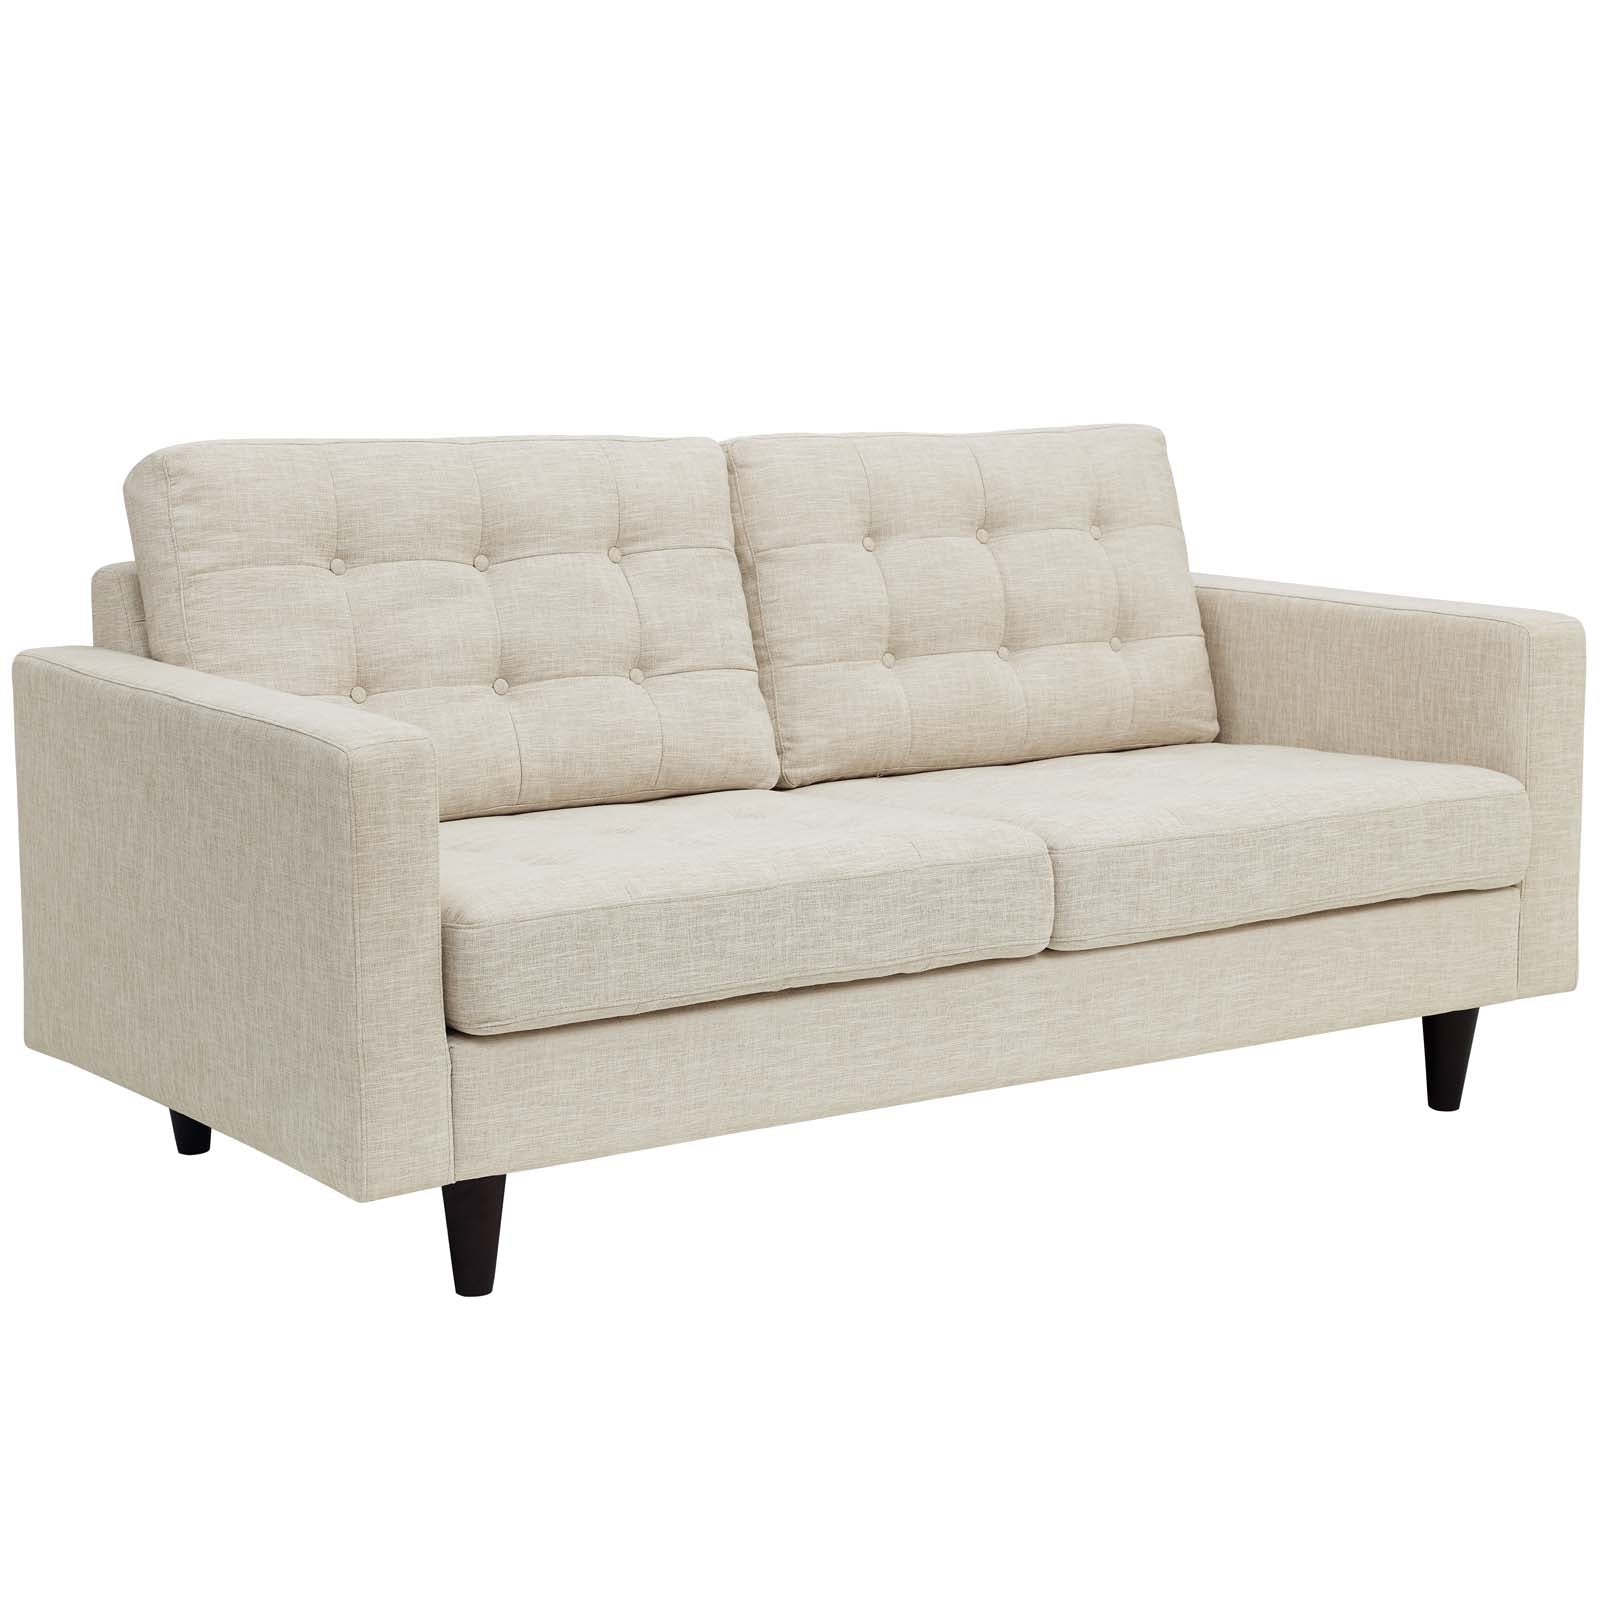 Modway Living Room Sets - Empress Sofa And Loveseat Set Of 2 Beige